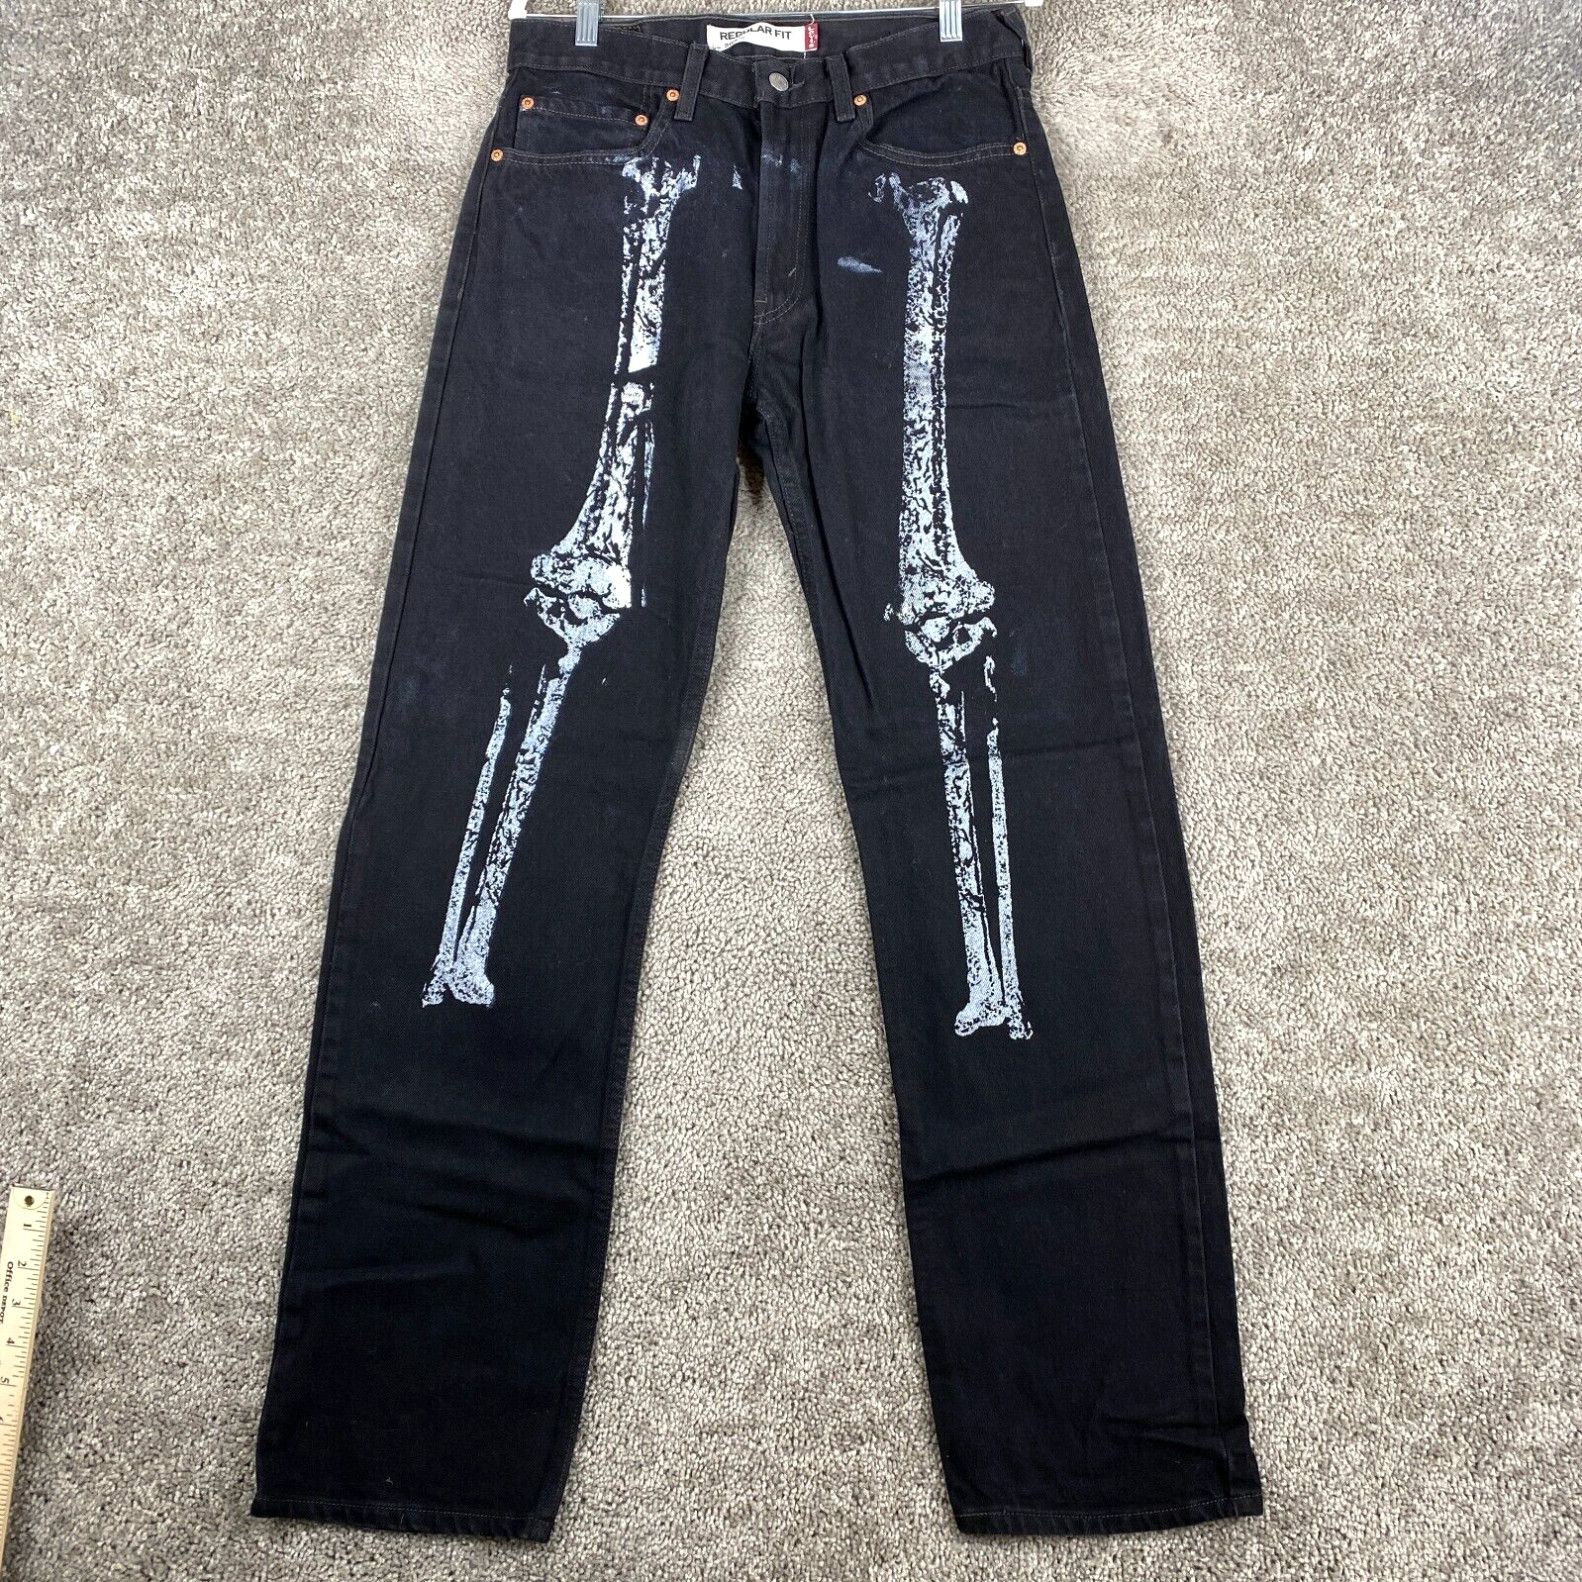 Levi's Levi's 505 Regular Fit Straight Jeans Men's Size W32xL34 Black Bone Print Size US 32 / EU 48 - 1 Preview